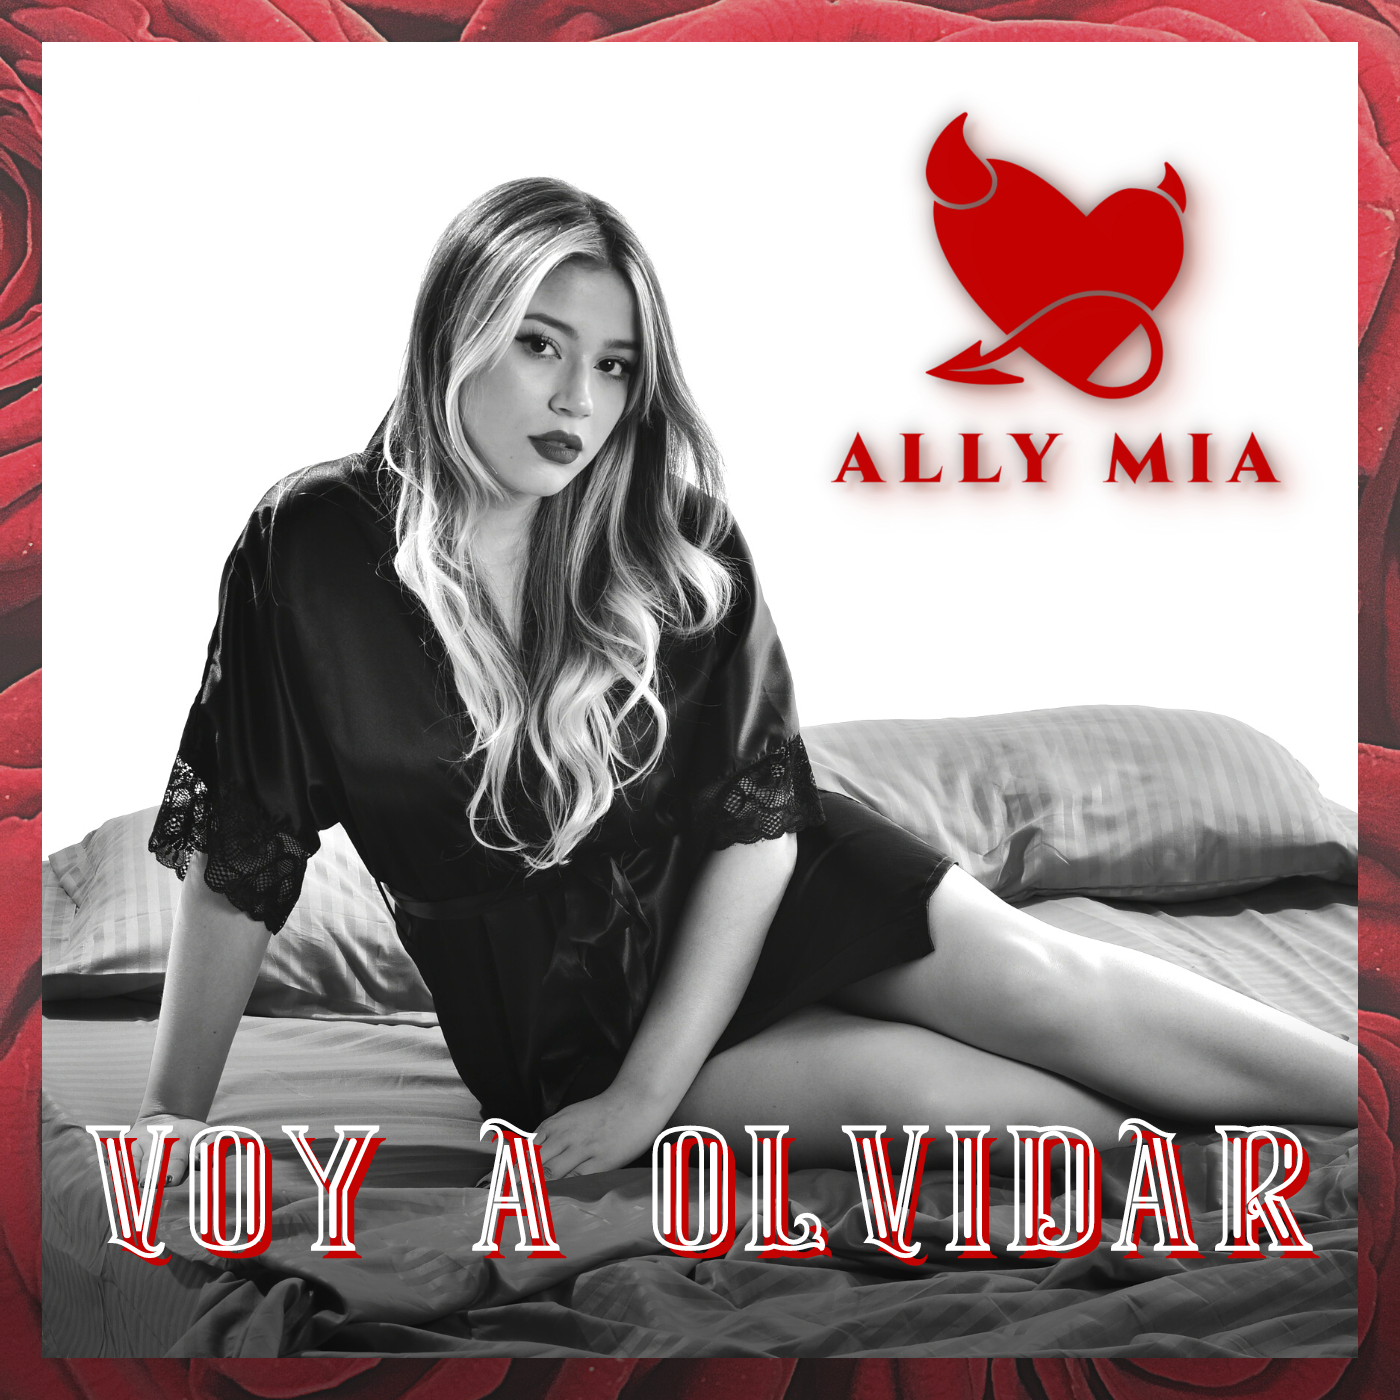 Con «Voy a Olvidar» Ally Mia hace su presentación en laindustria musical